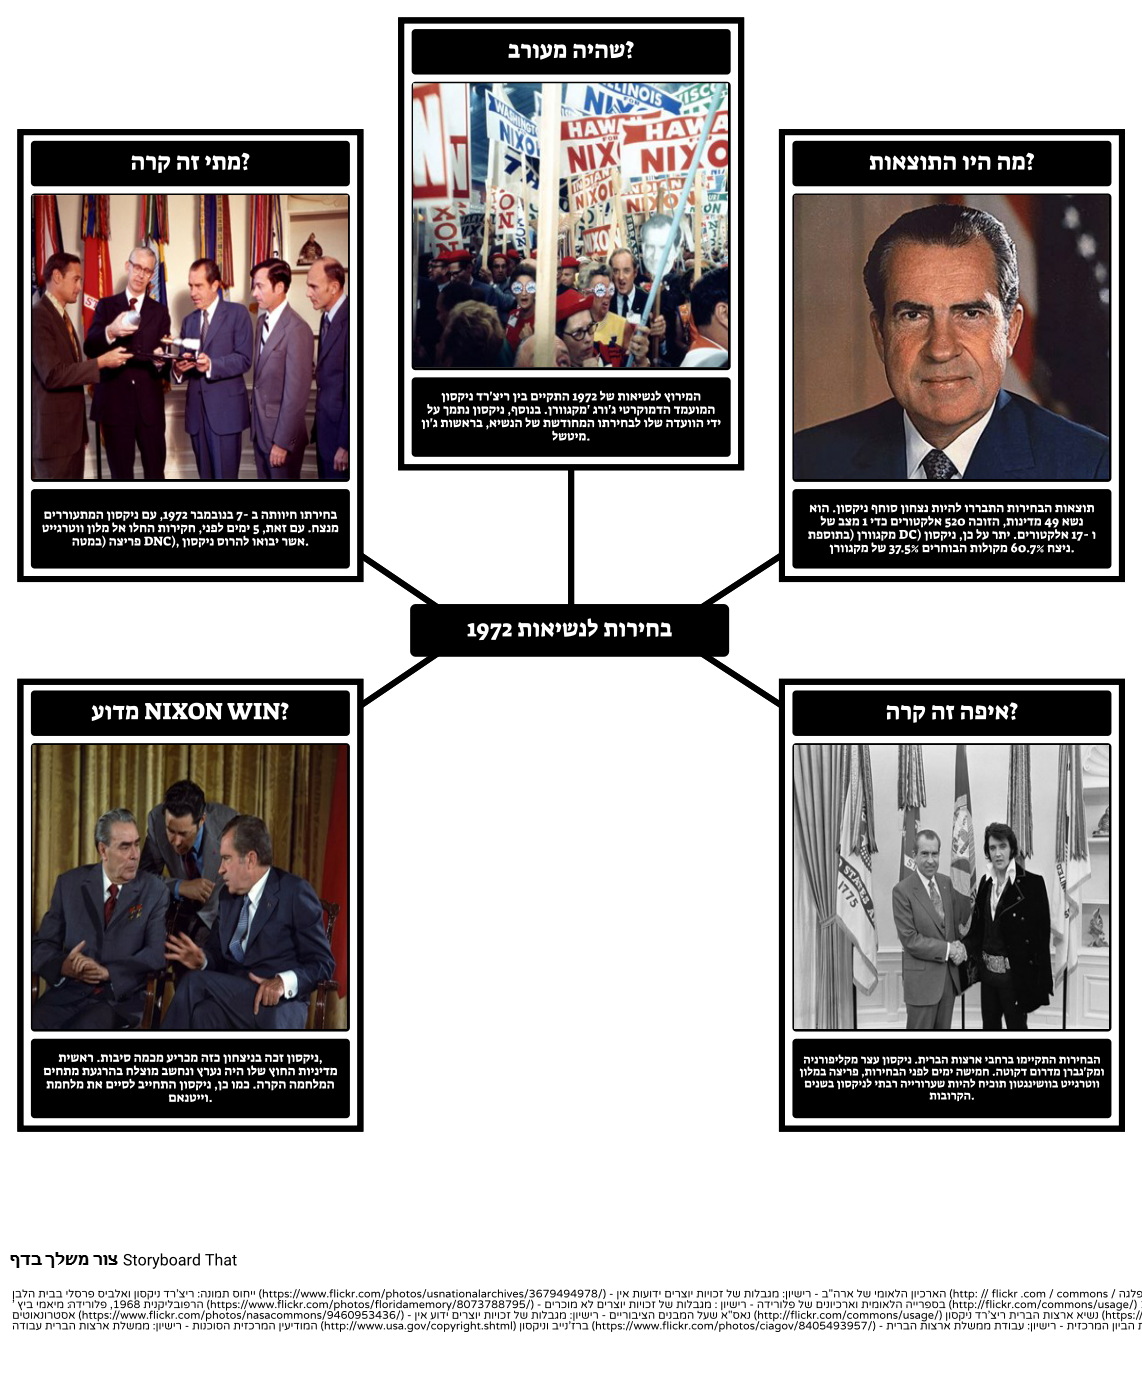 הנשיאות של ריצ'רד ניקסון - 5 Ws של בחירות 1972